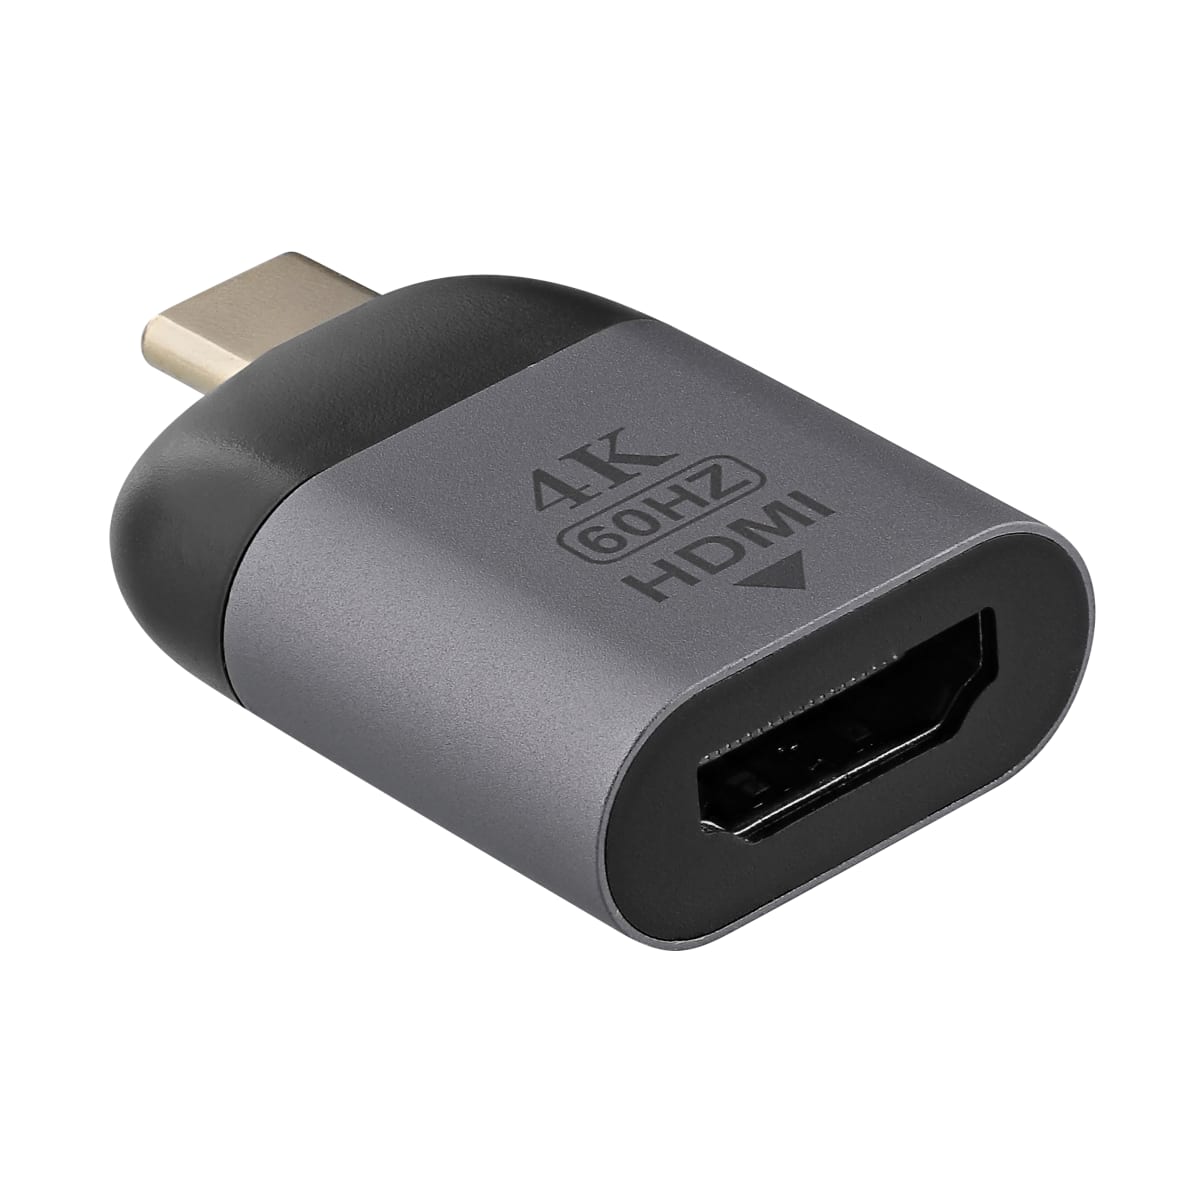 NOVOO HUB USB C HDMI, Adaptateur USB C vers HDMI 4K, 3 x USB 3.0, Lecteur  de  EUR 39,58 - PicClick FR